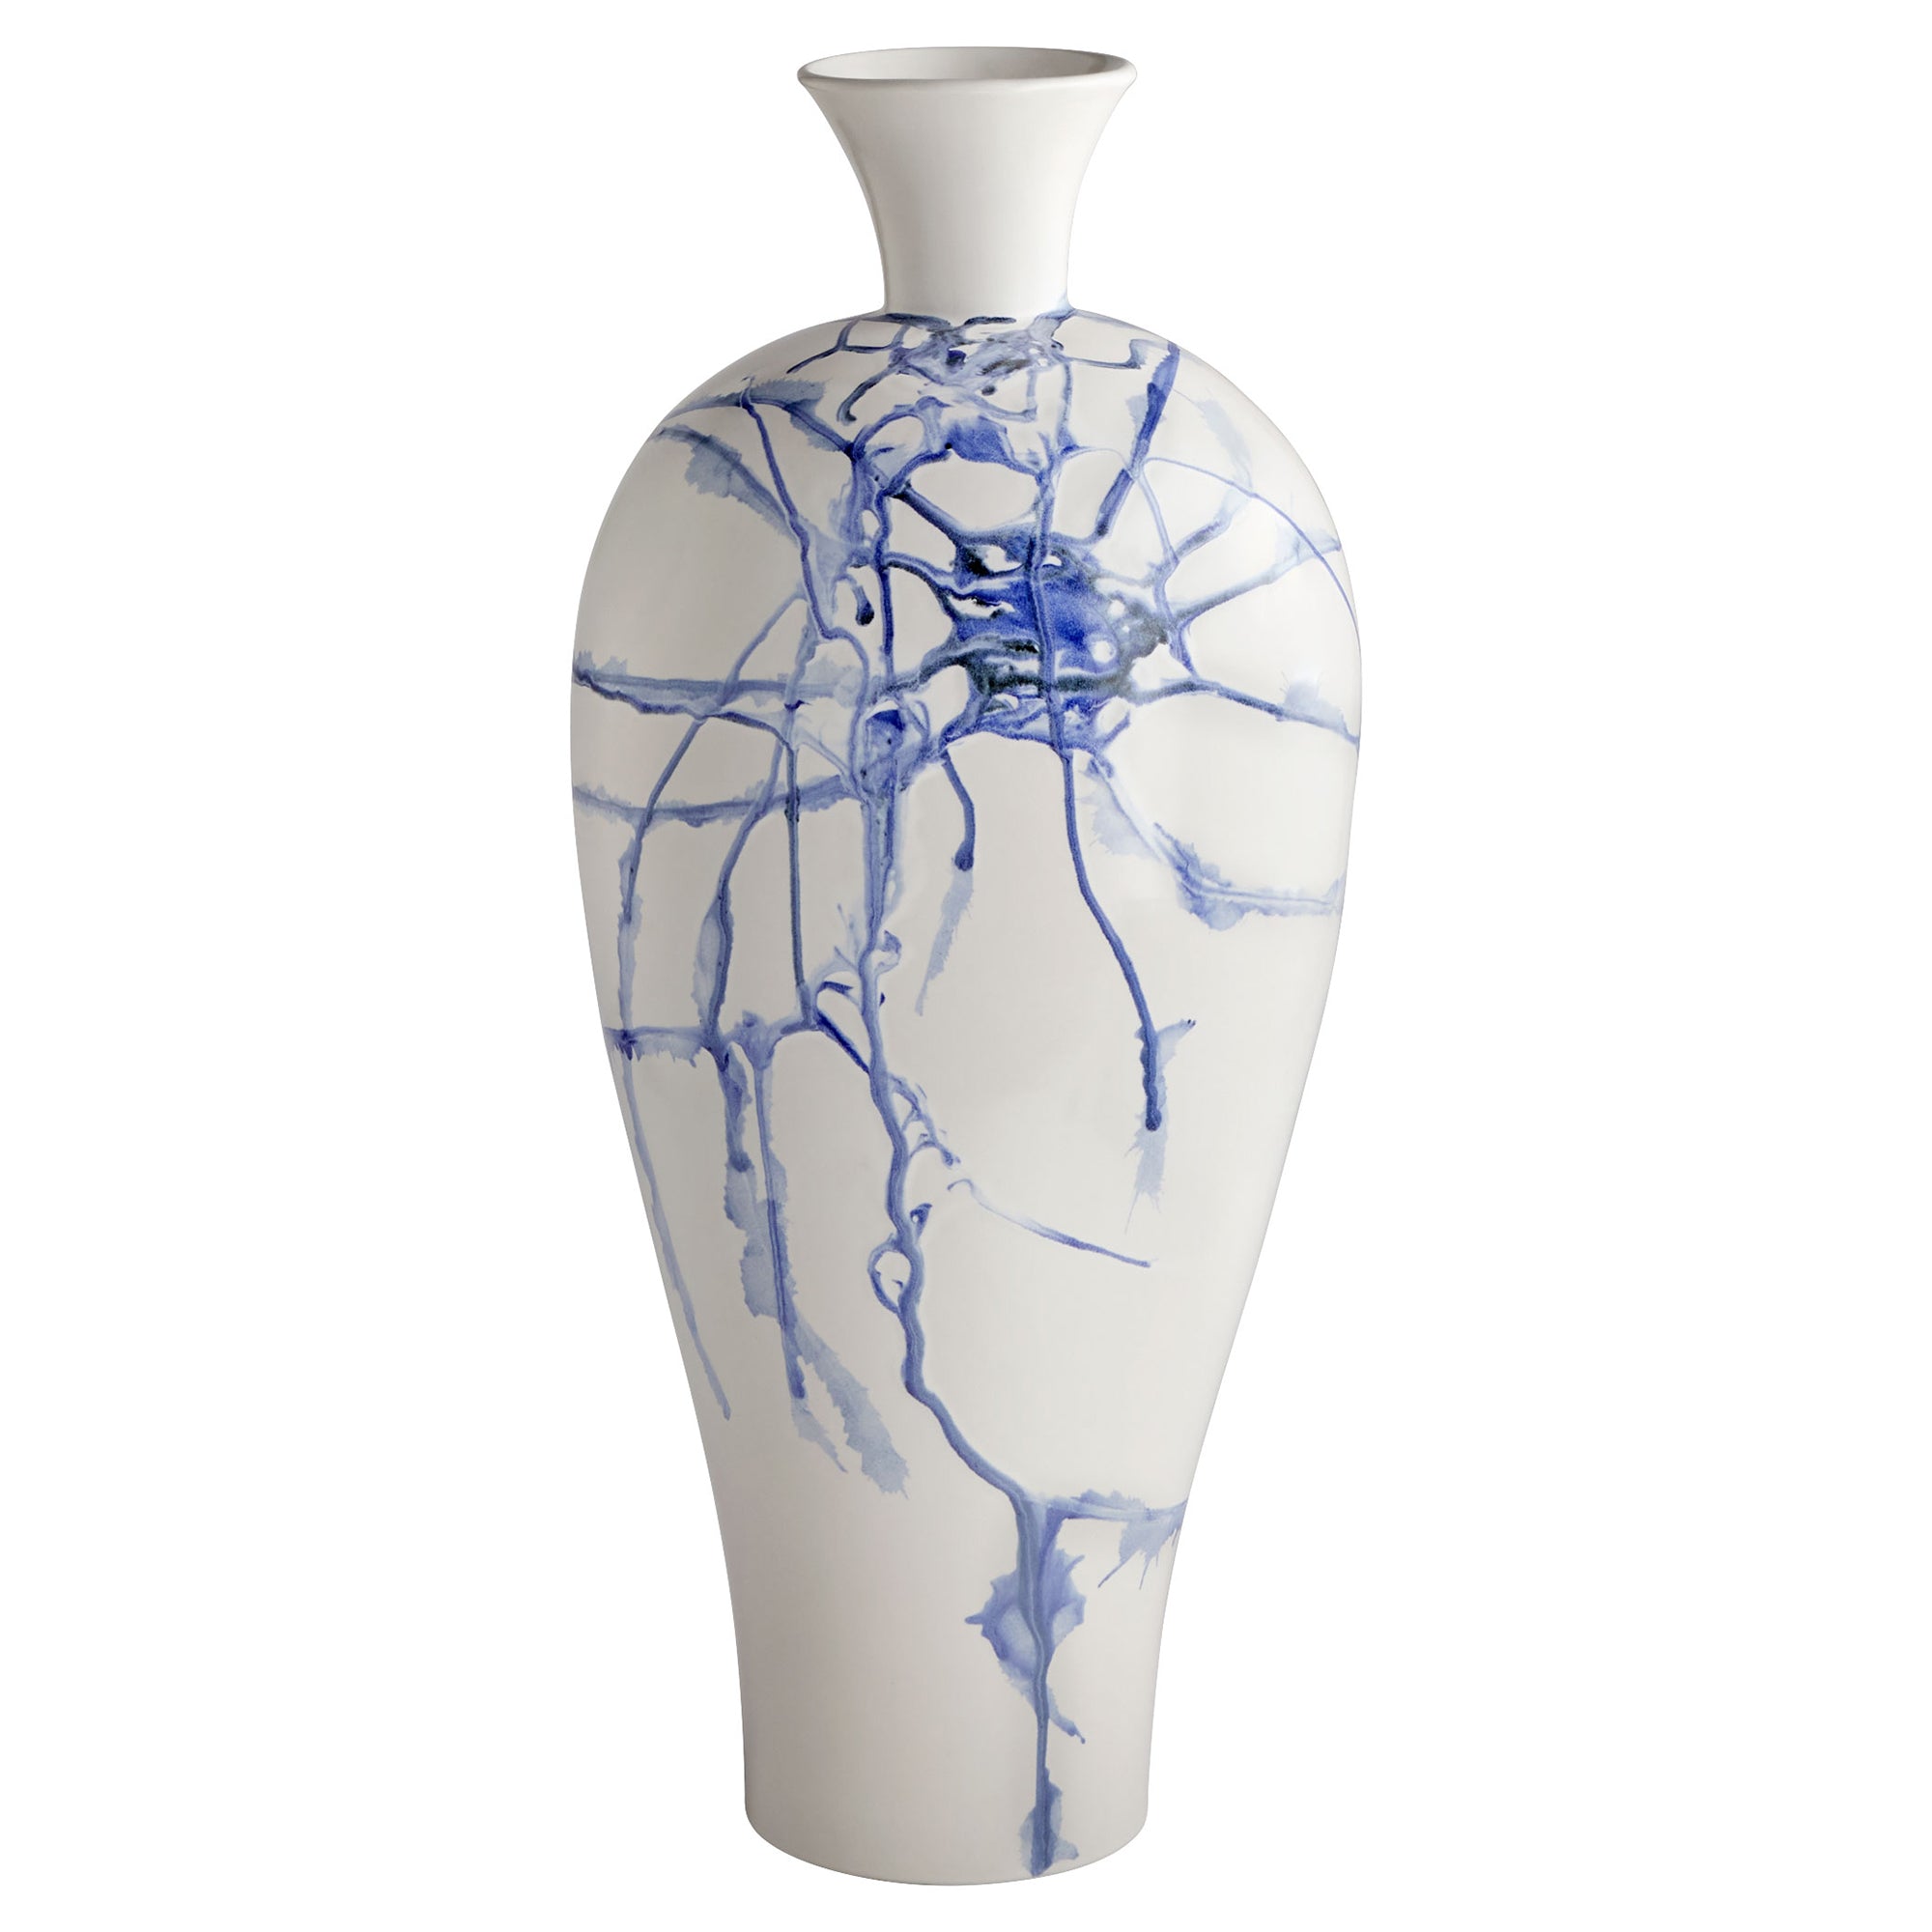 Cyan Design Neos Large Ceramic Vase 11926 horse hair raku - White, Blue, Black